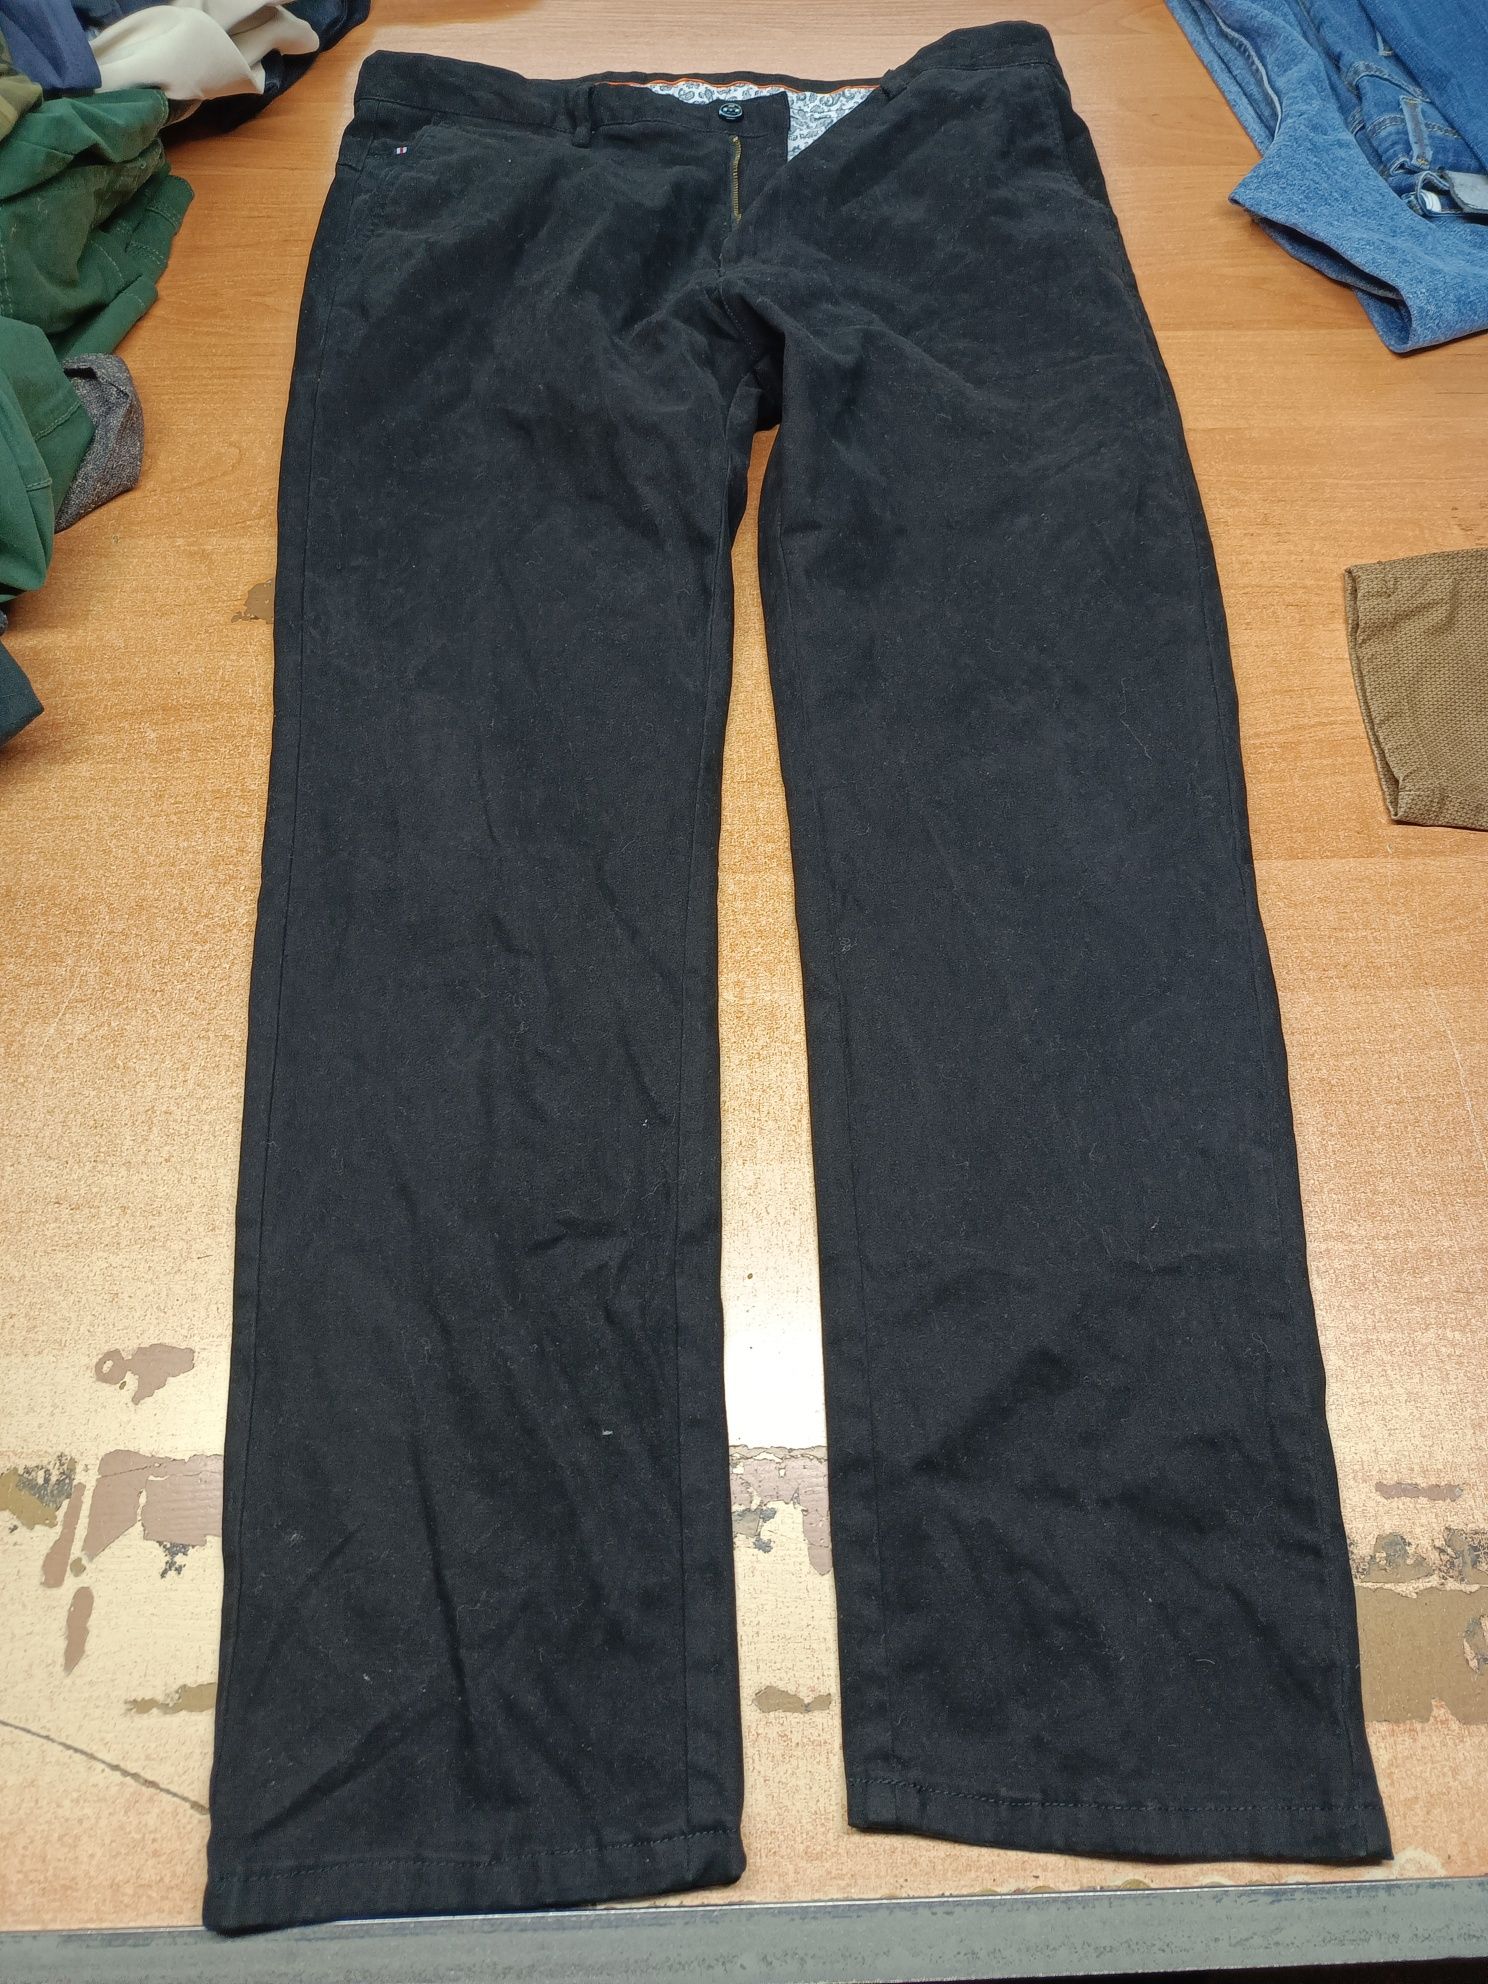 Spodnie męskie od xs do xxl sortowane